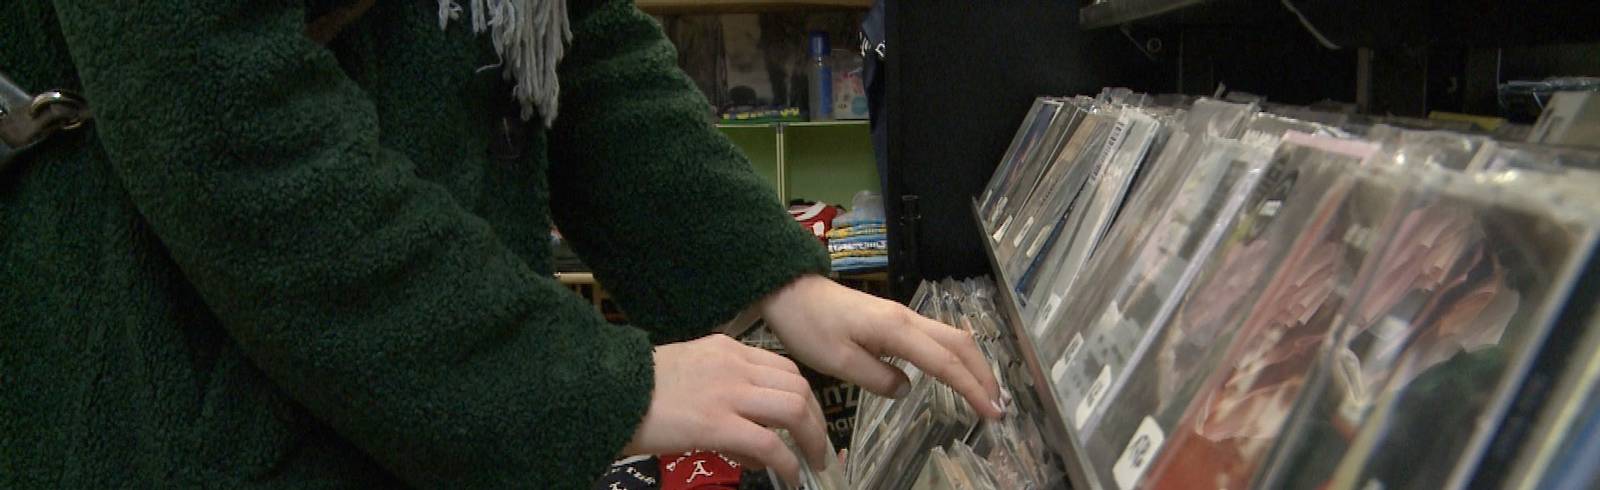 Musikmarkt: Vinyl und CD noch längst nicht tot